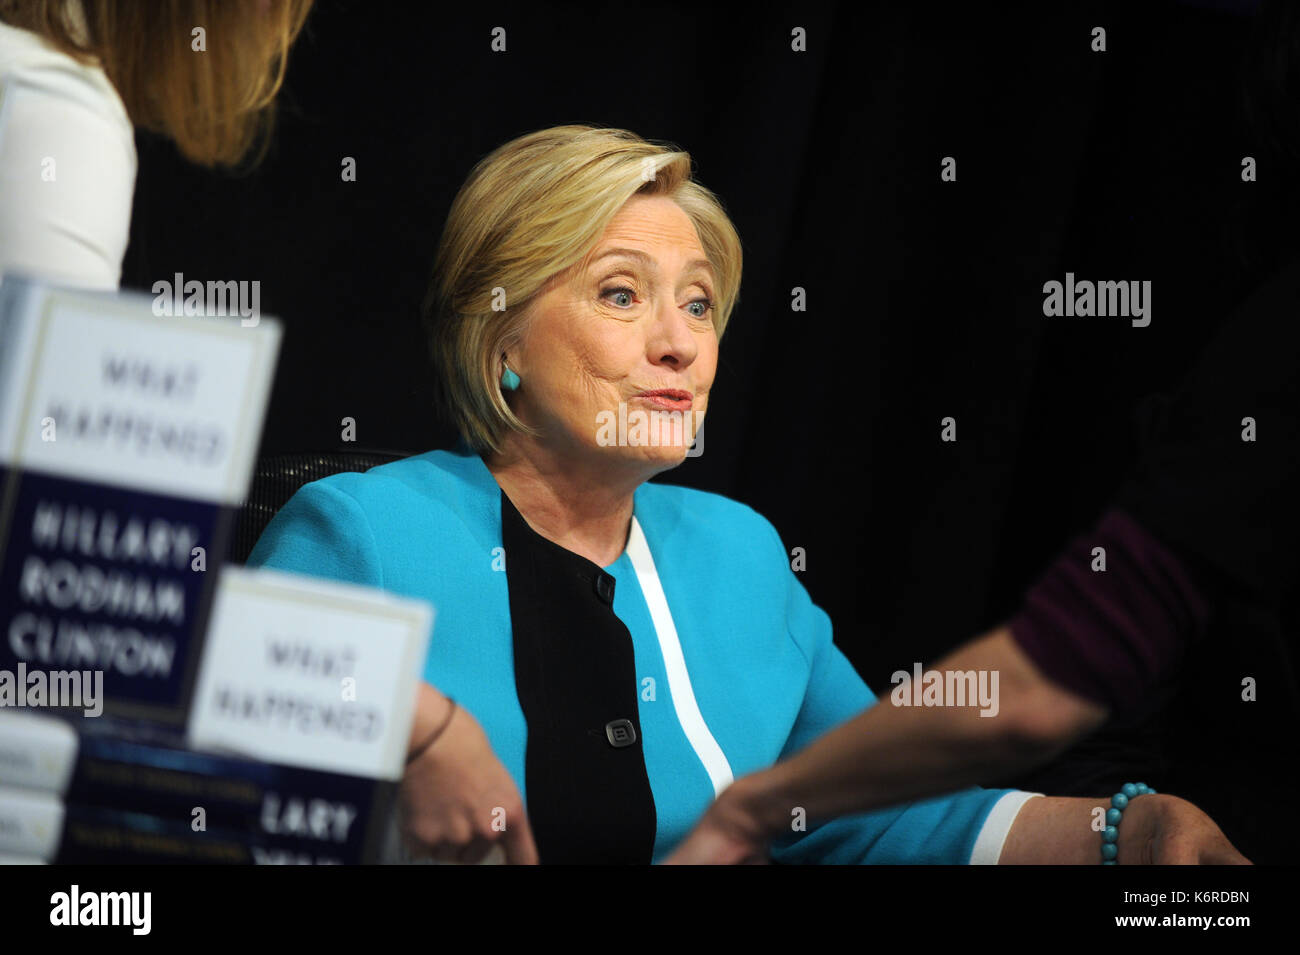 Nueva York, NY, Estados Unidos. 12 de septiembre de 2017. Hillary Clinton, ex secretaria de Estado de los EE.UU., firma copias de su libro "What Sucedió" en Barnes & Noble Union Square el 12 de septiembre de 2017 en la ciudad de Nueva York. Crédito: Mpi122/Media Punch/Alamy Live News Foto de stock